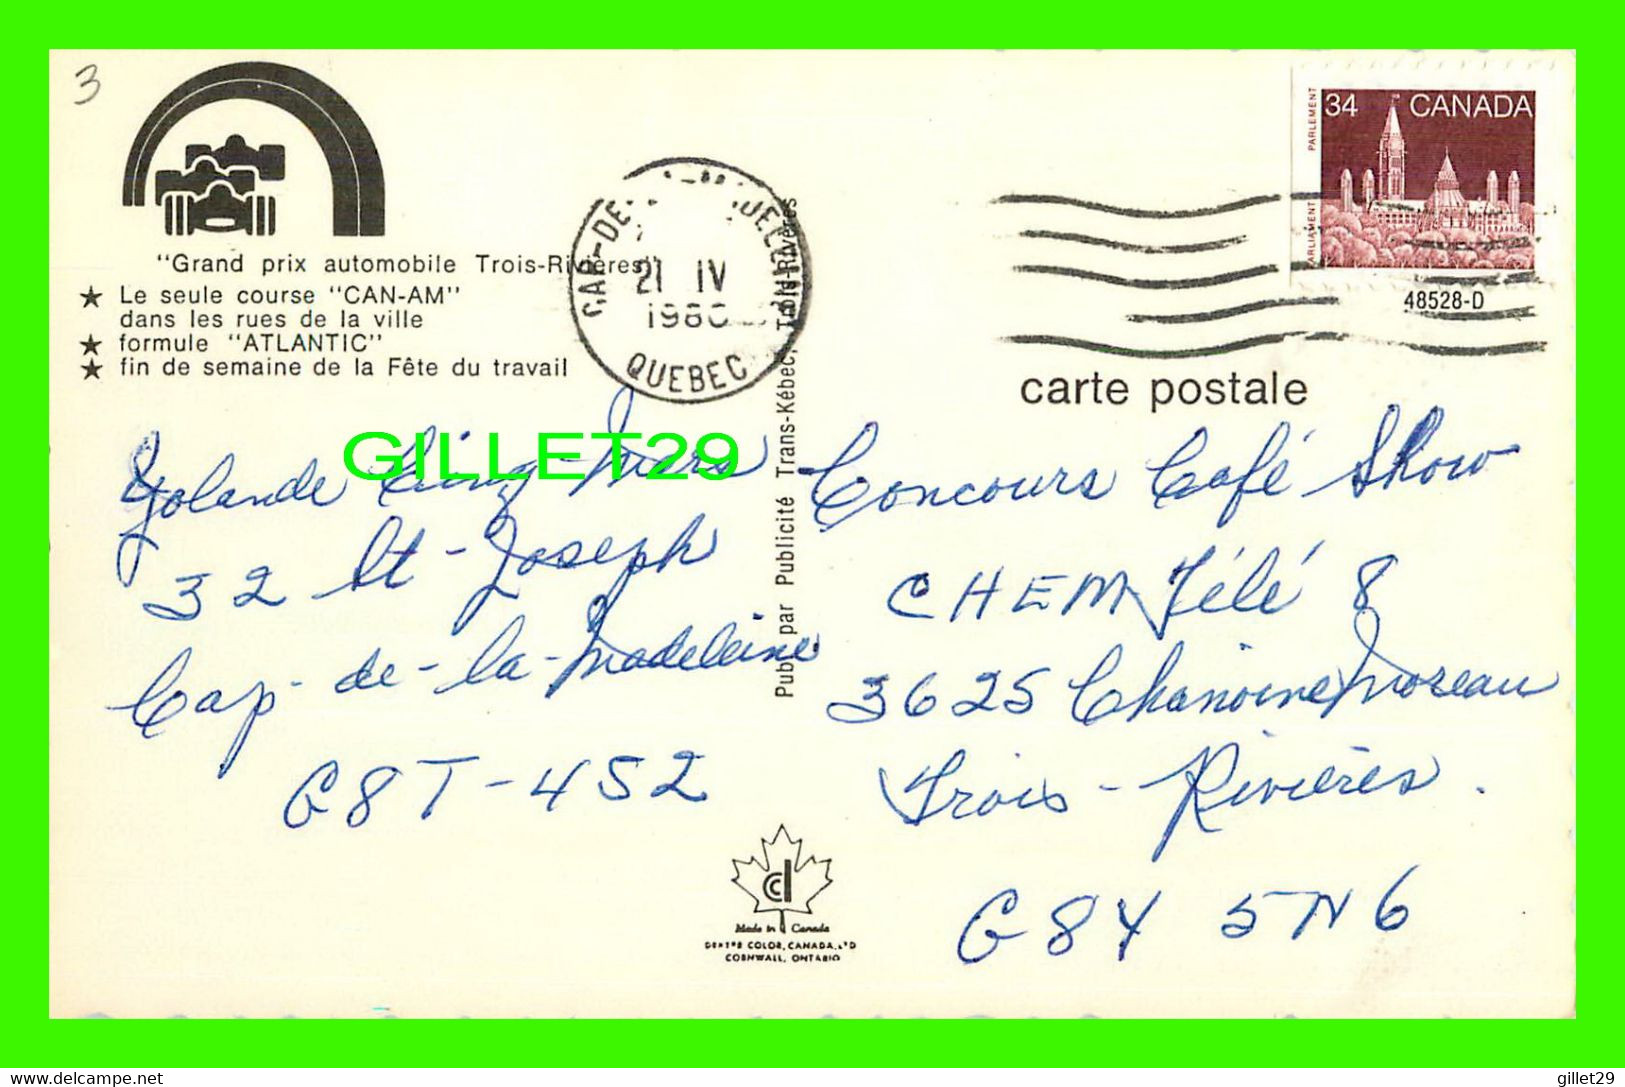 TROIS-RIVIÈRES, QUÉBEC - GRAND PRIX AUTOMOBILE - CIRCULÉE EN 1980 -PUB. BY TRANS-KÉBEC - - Trois-Rivières